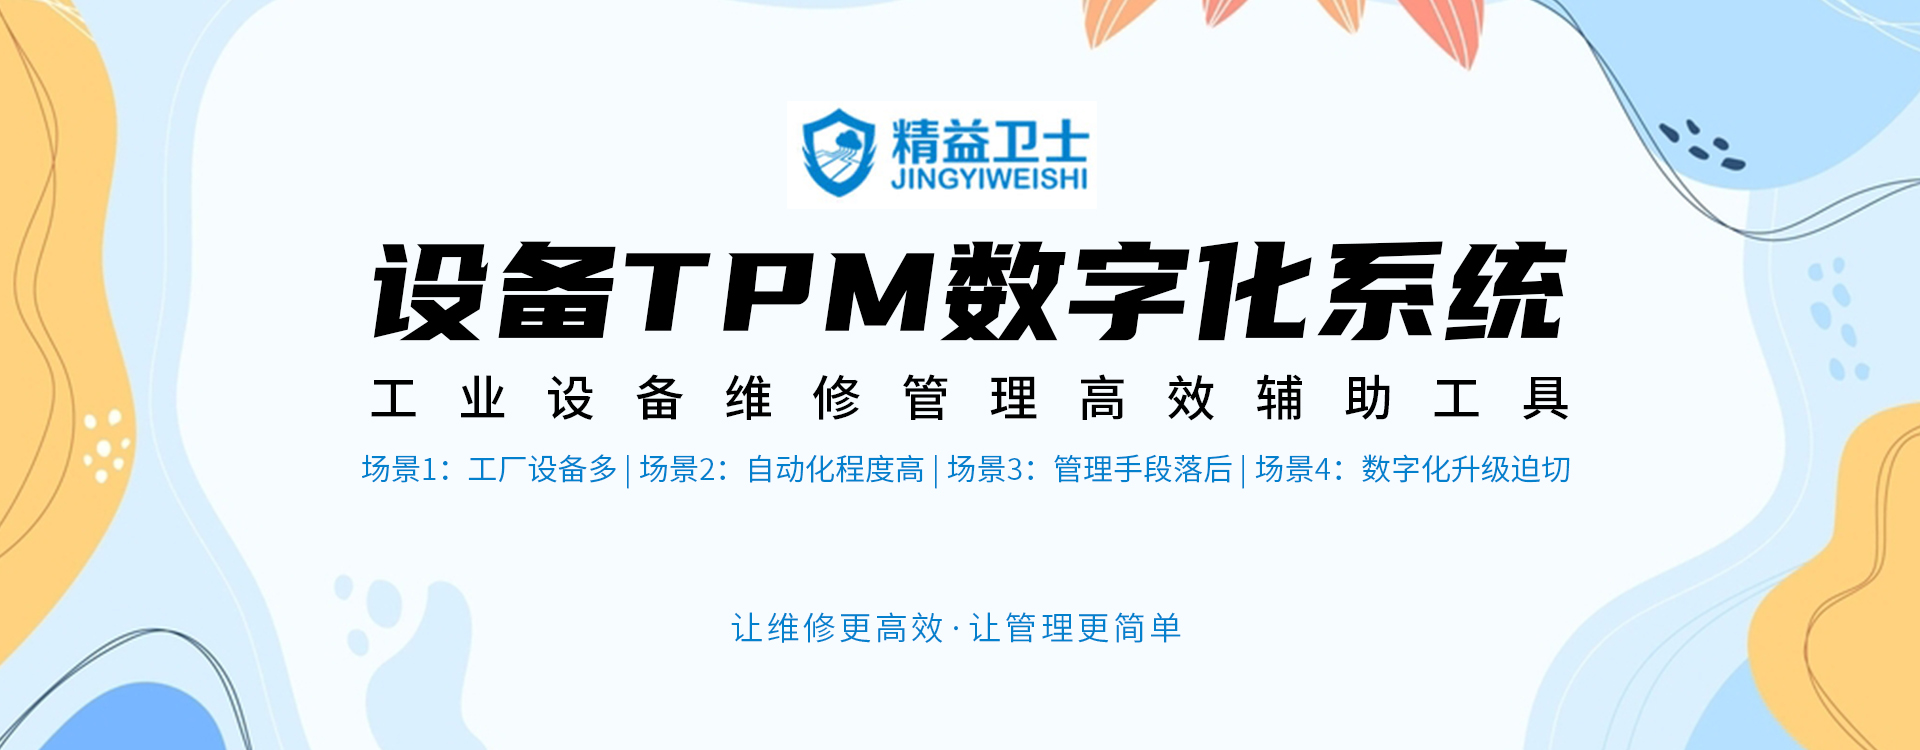 设备TPM数字化系统